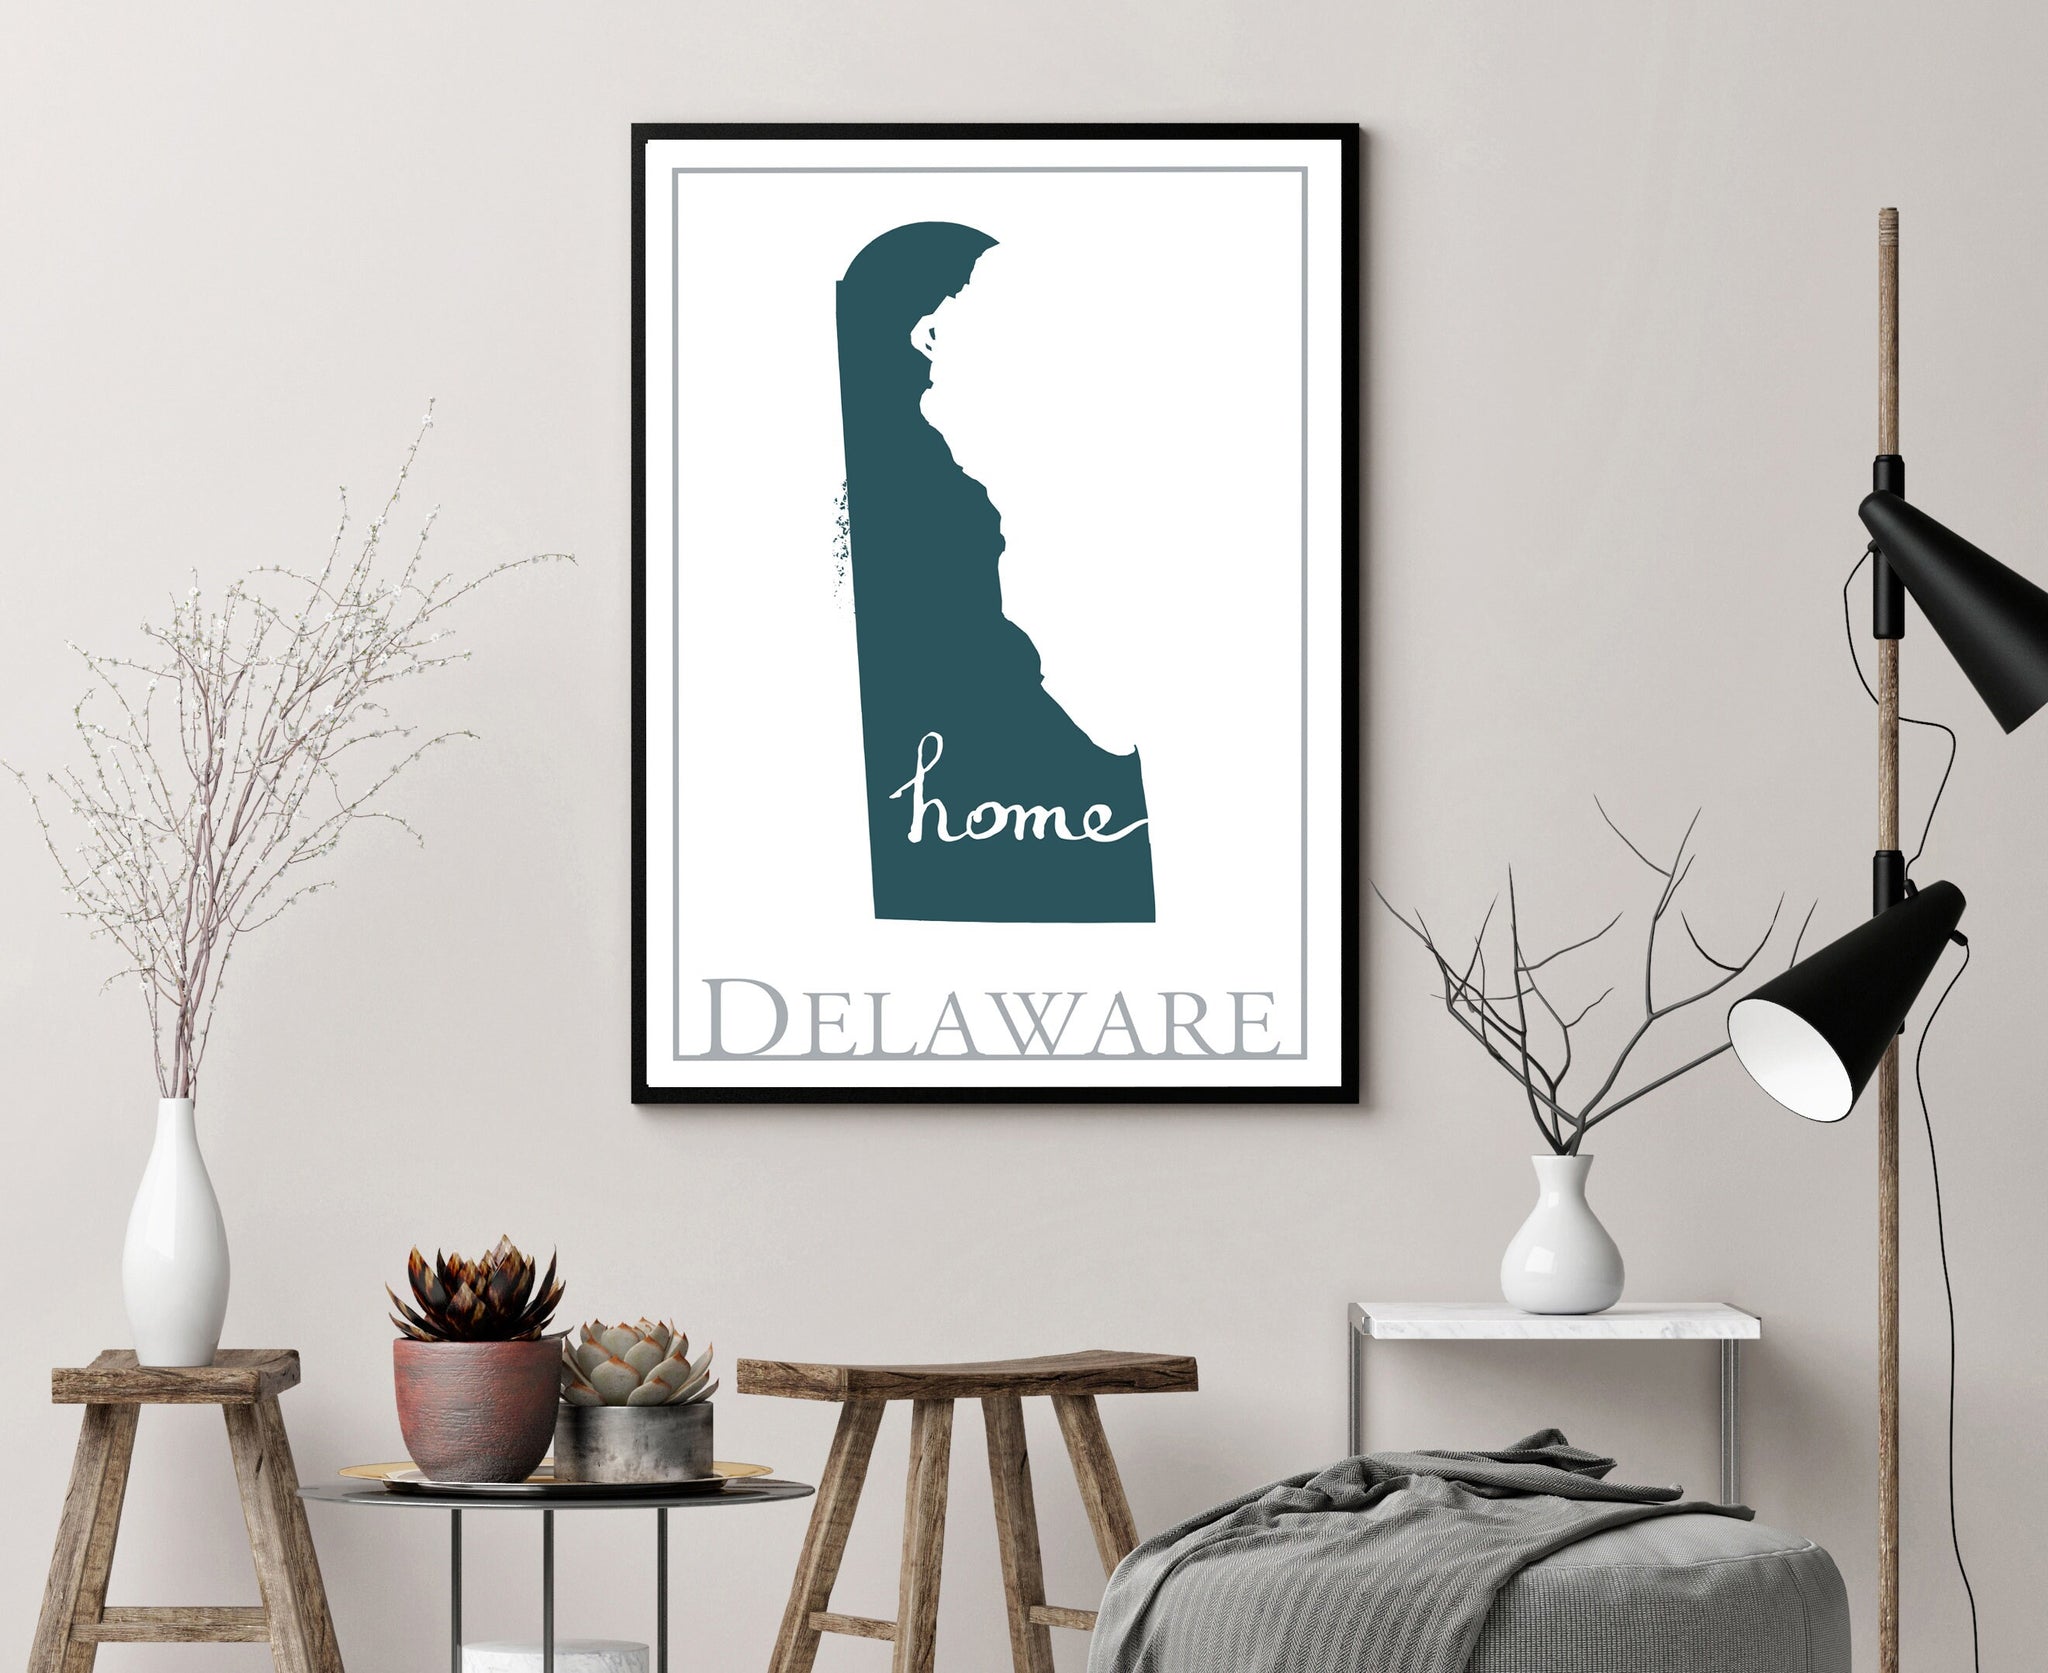 Delaware Map Wall Art, Delaware  Modern map poster, Home Wall Decor, City map poster, Delaware City Poster, State Poster, Home wall decor